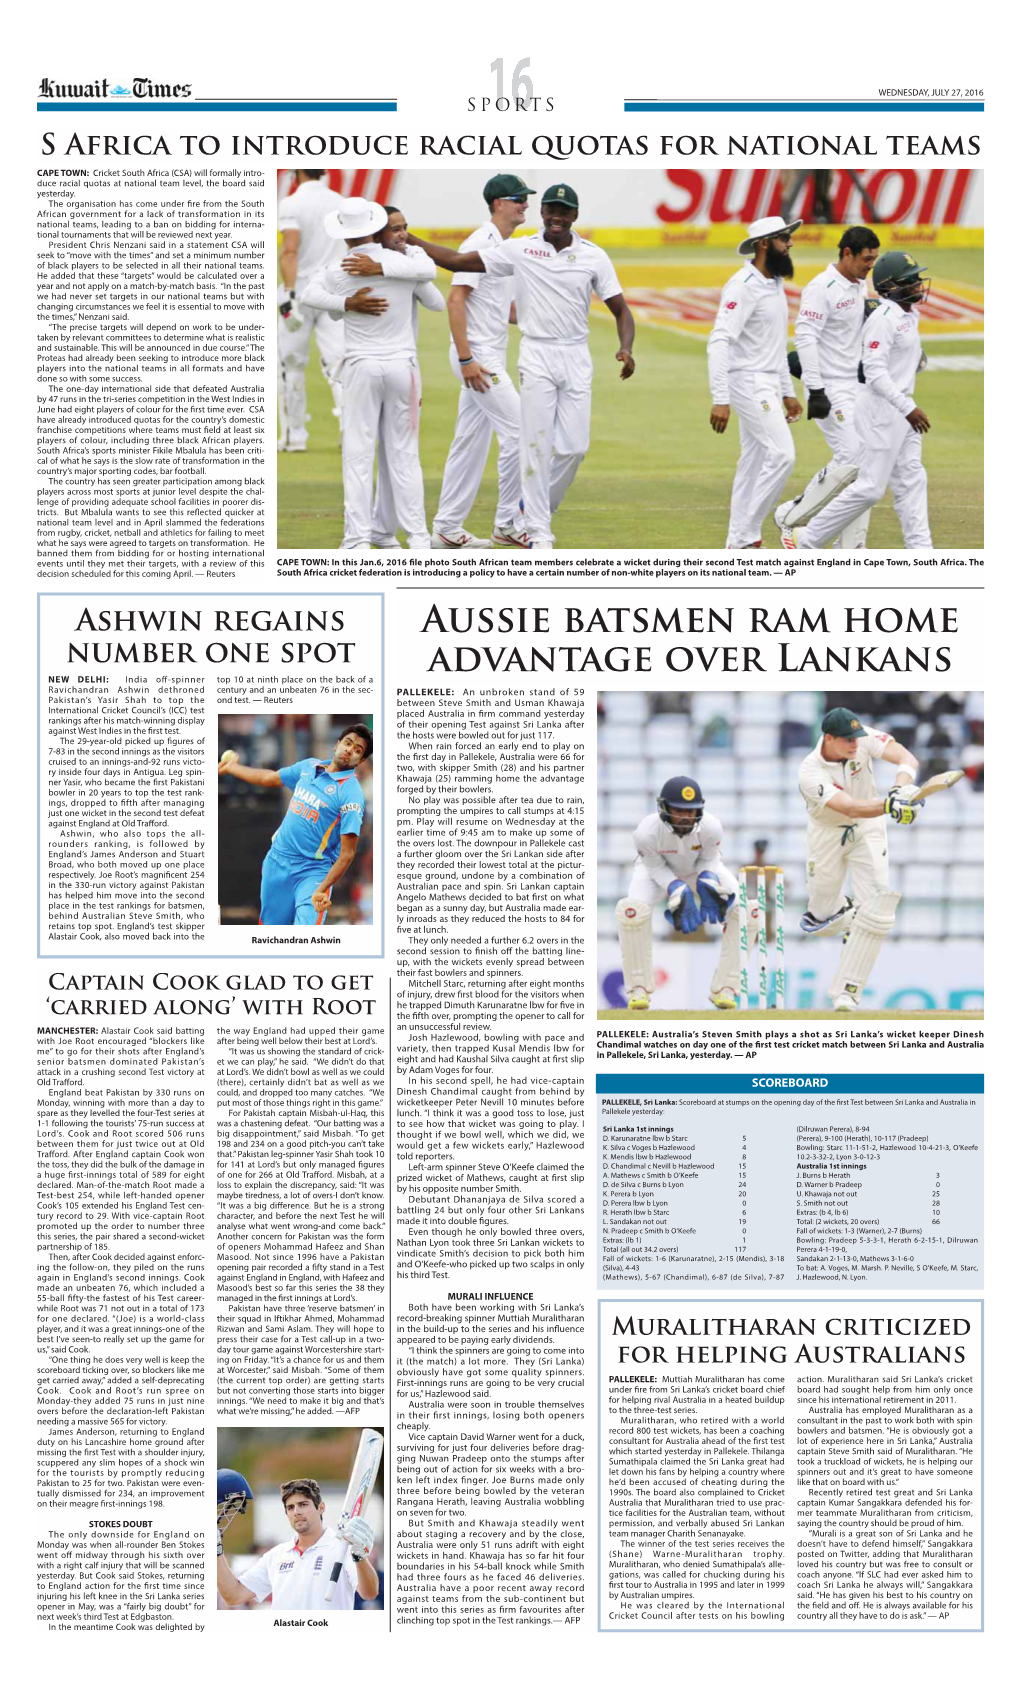 Aussie Batsmen Ram Home Advantage Over Lankans